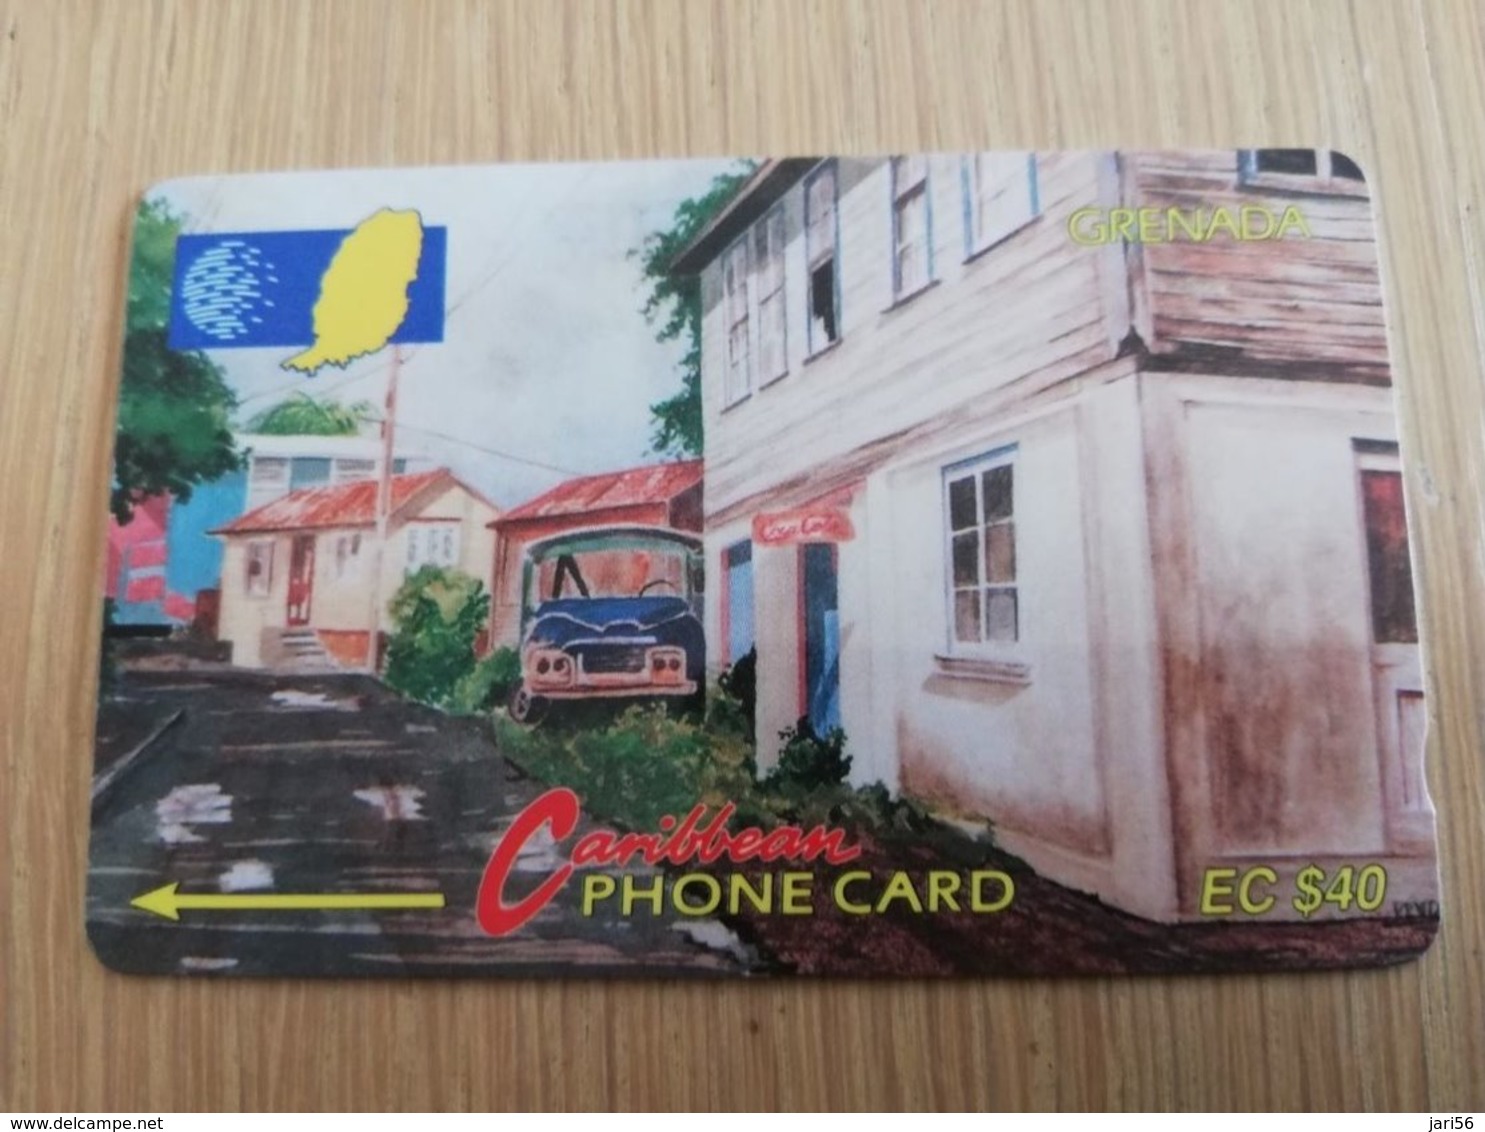 GRENADA  $ 40,- GPT GRE-5C  STREET SCENE GOUVYAVE   MAGNETIC    Fine Used Card    **2235 ** - Grenada